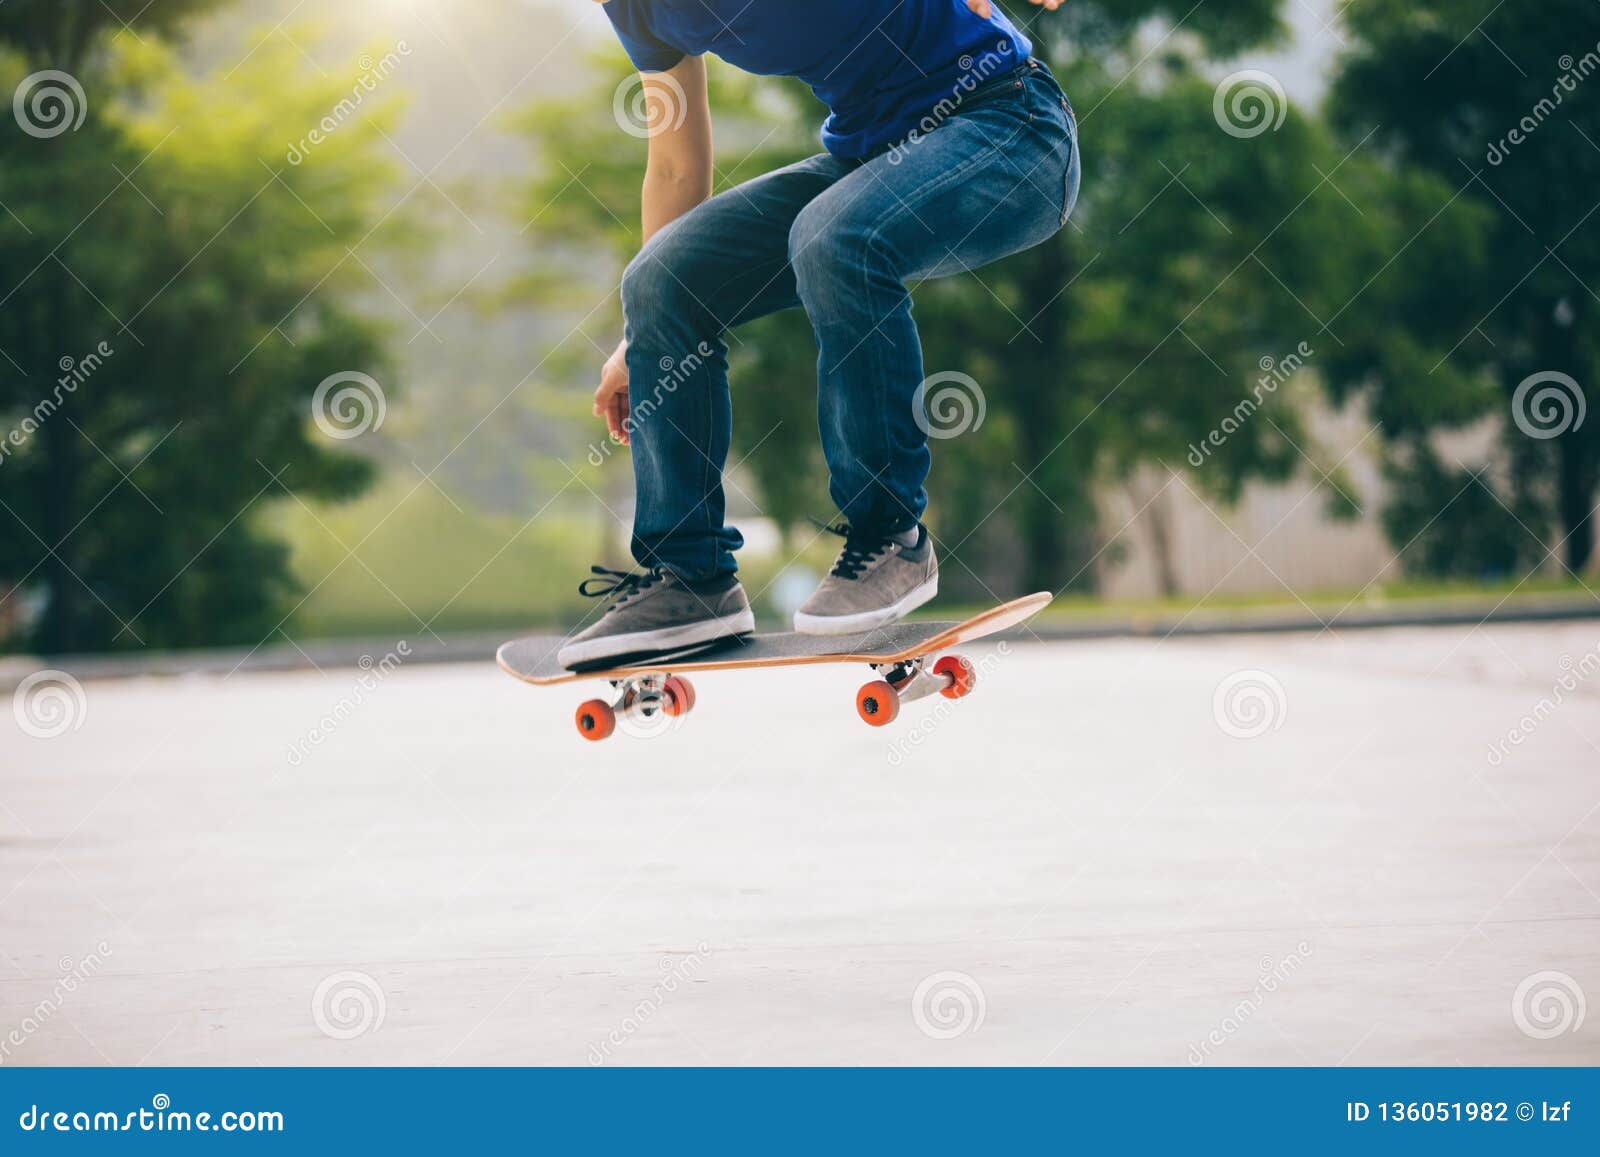 玩滑板的运动人物局部47230_体育运动_人物类_图库壁纸_68Design